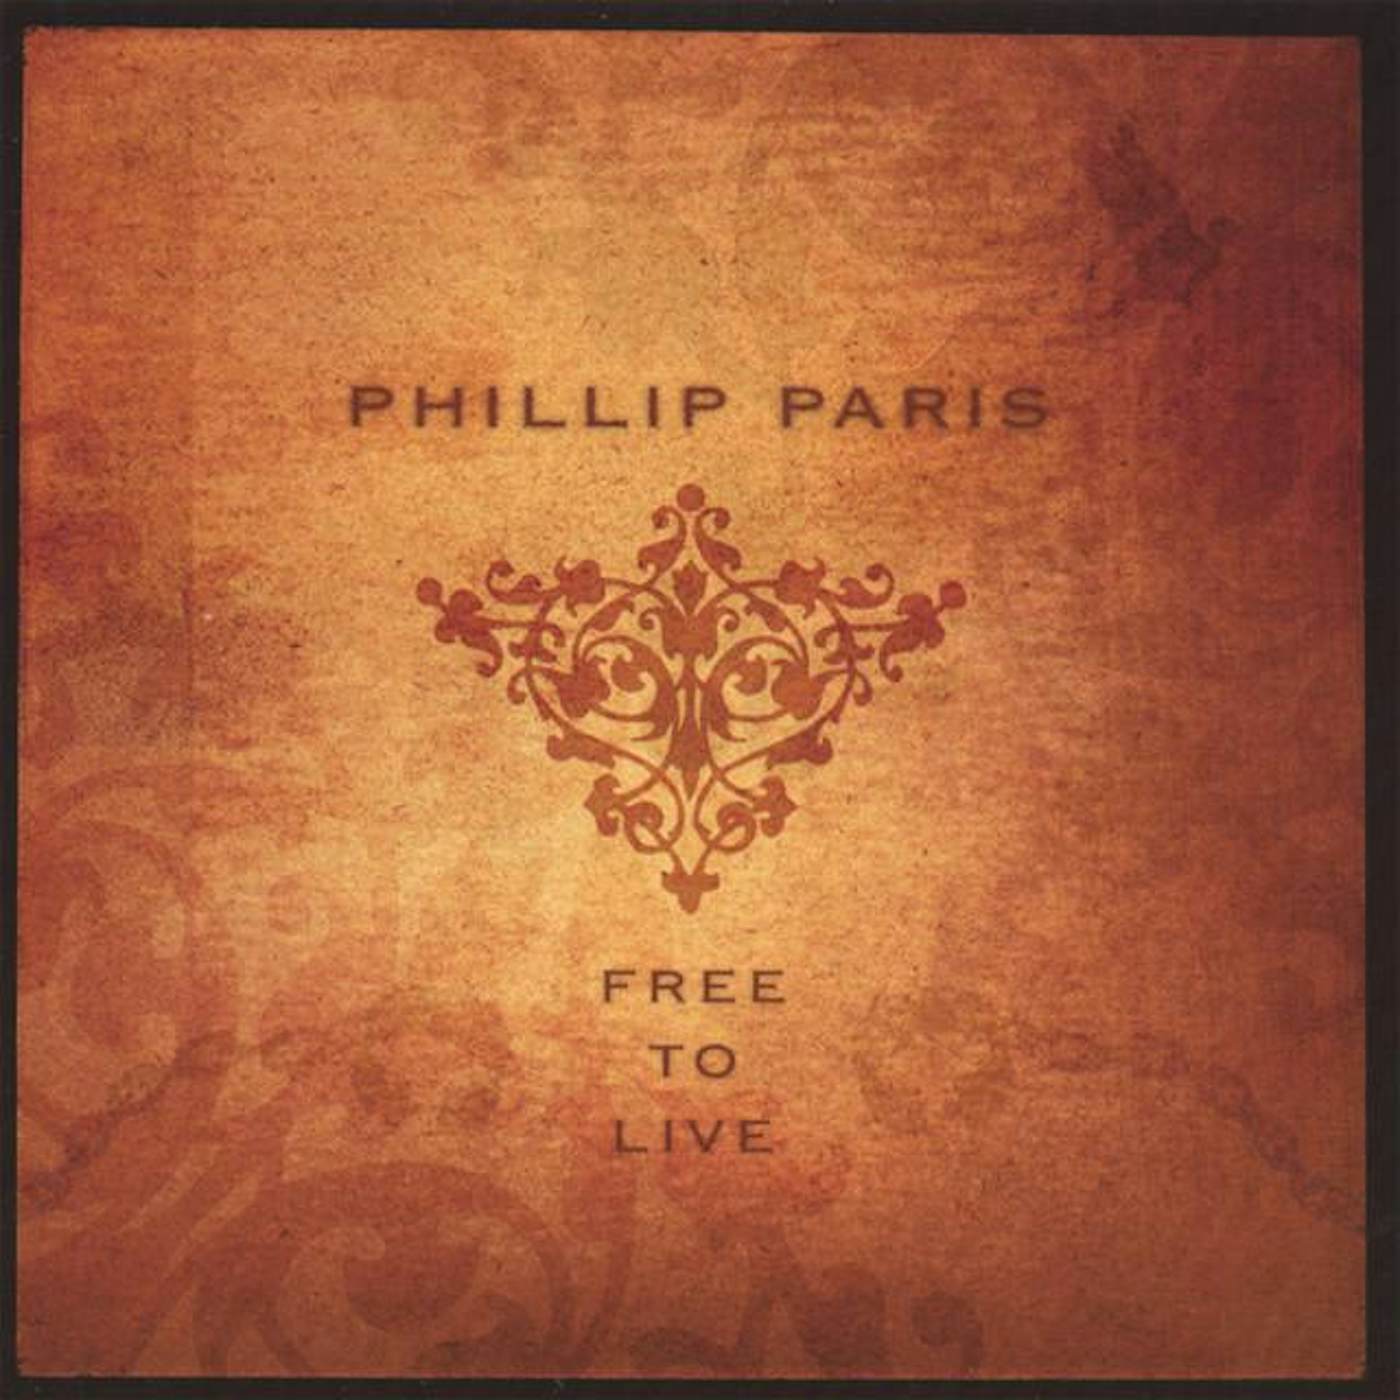 Phillip Paris